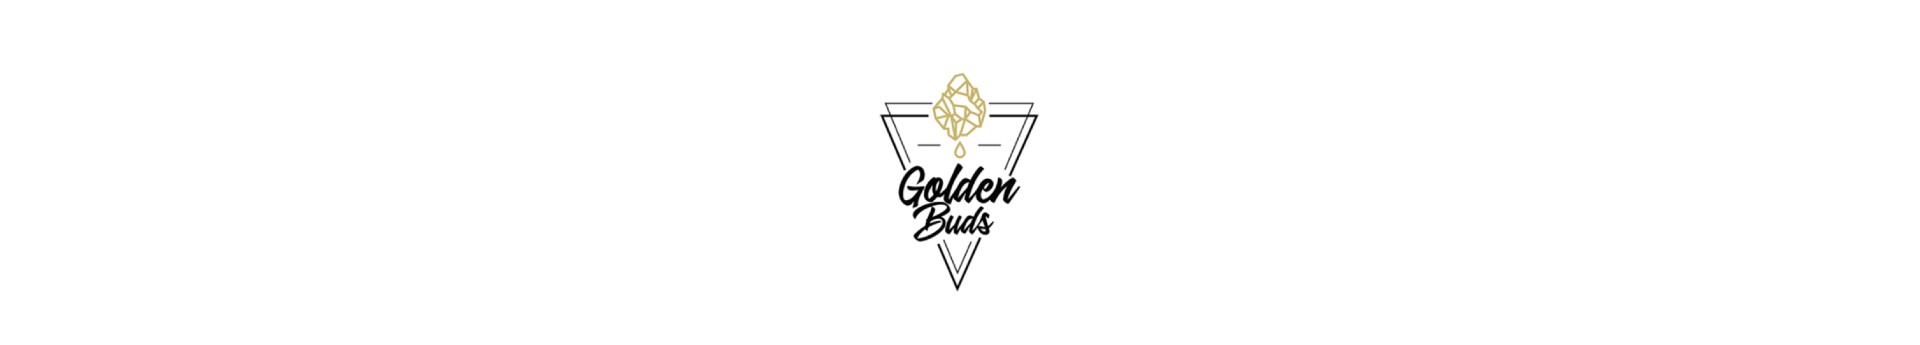 GoldenBuds